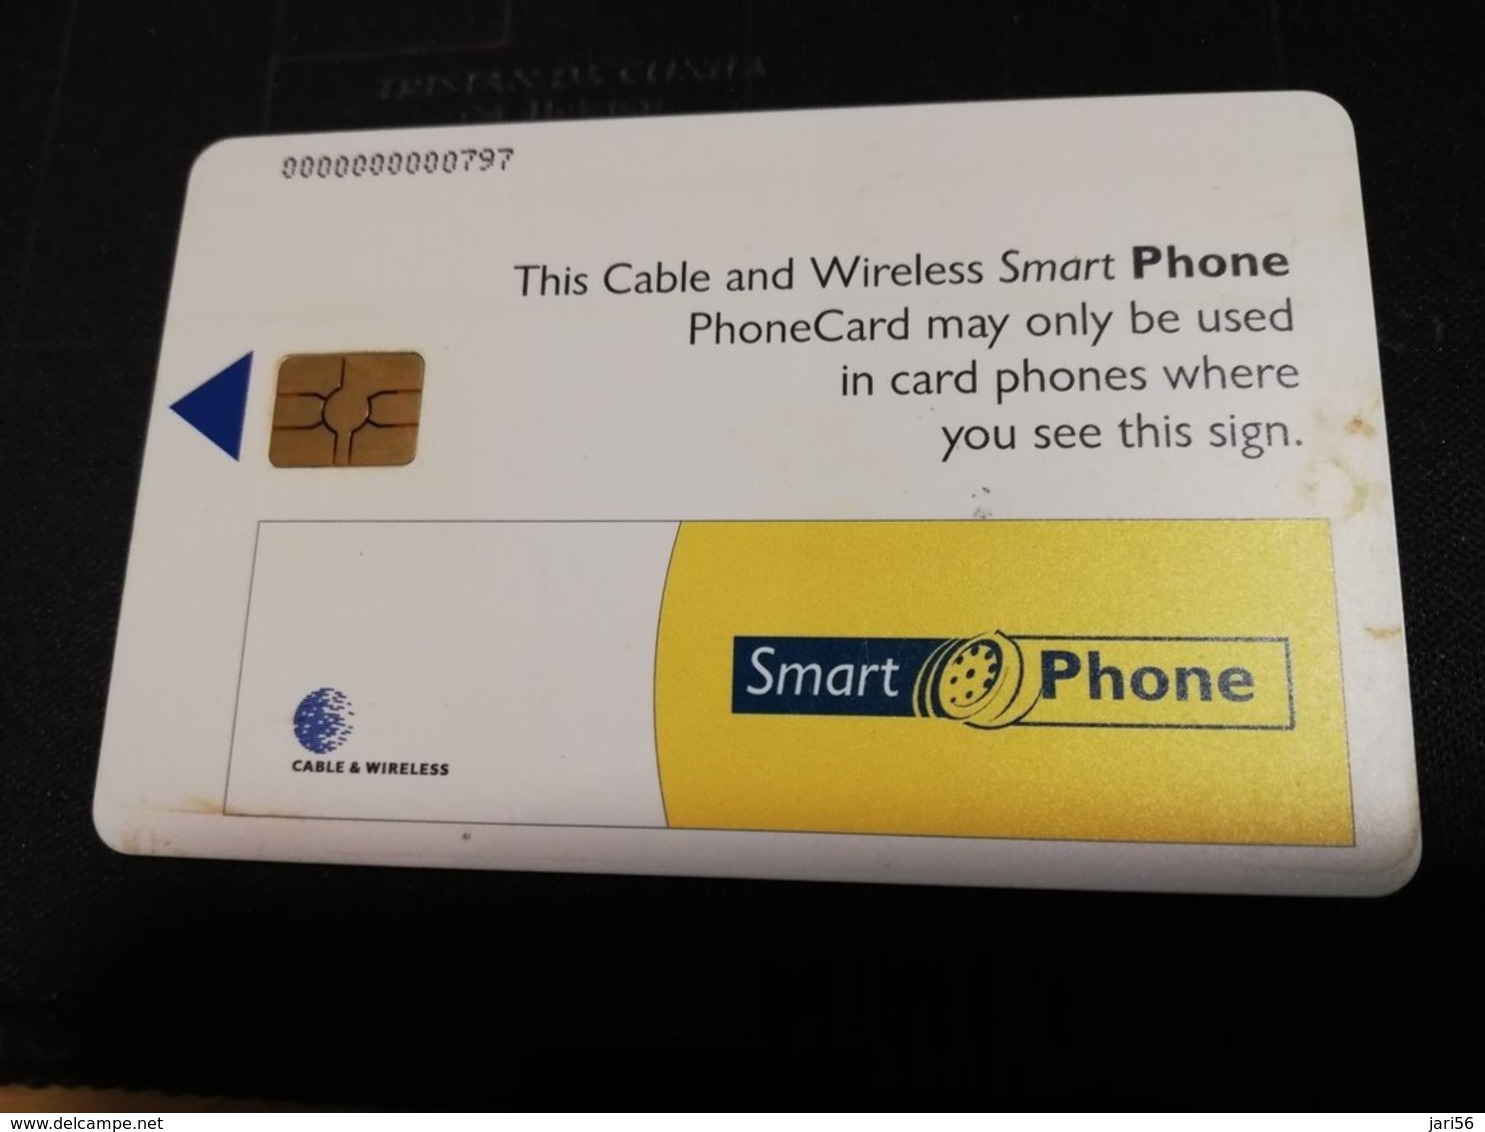 BARBADOS   $10- SMART PHONE  CHIPCARD  Fine Used Card  ** 398 ** - Barbados